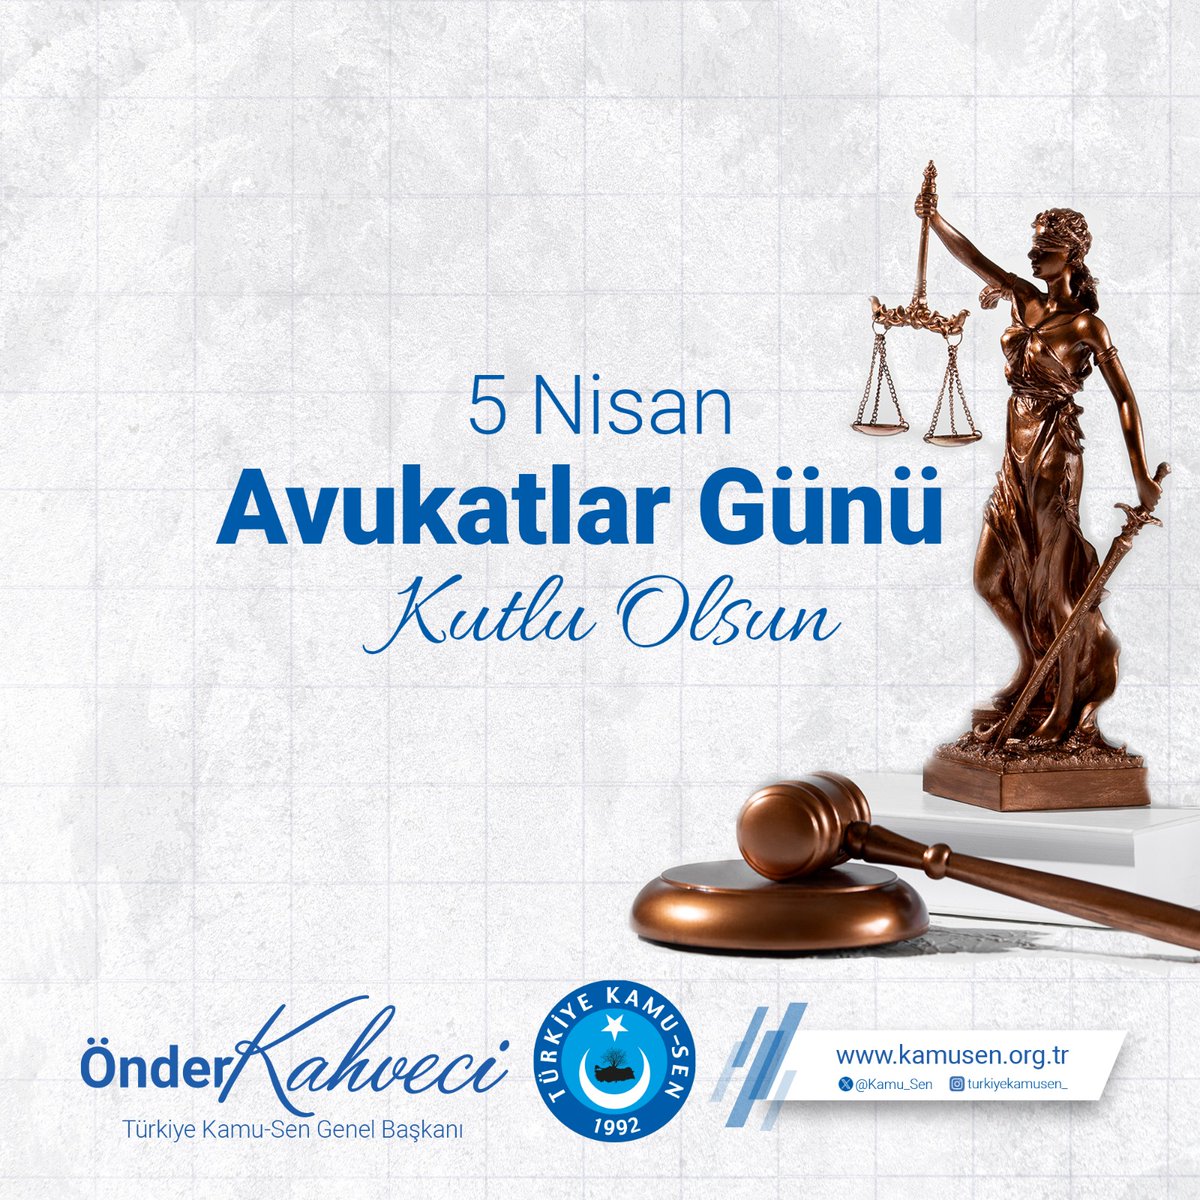 Tüm Avukatlarımızın 5 Nisan #AvukatlarGünü Kutlu Olsun.